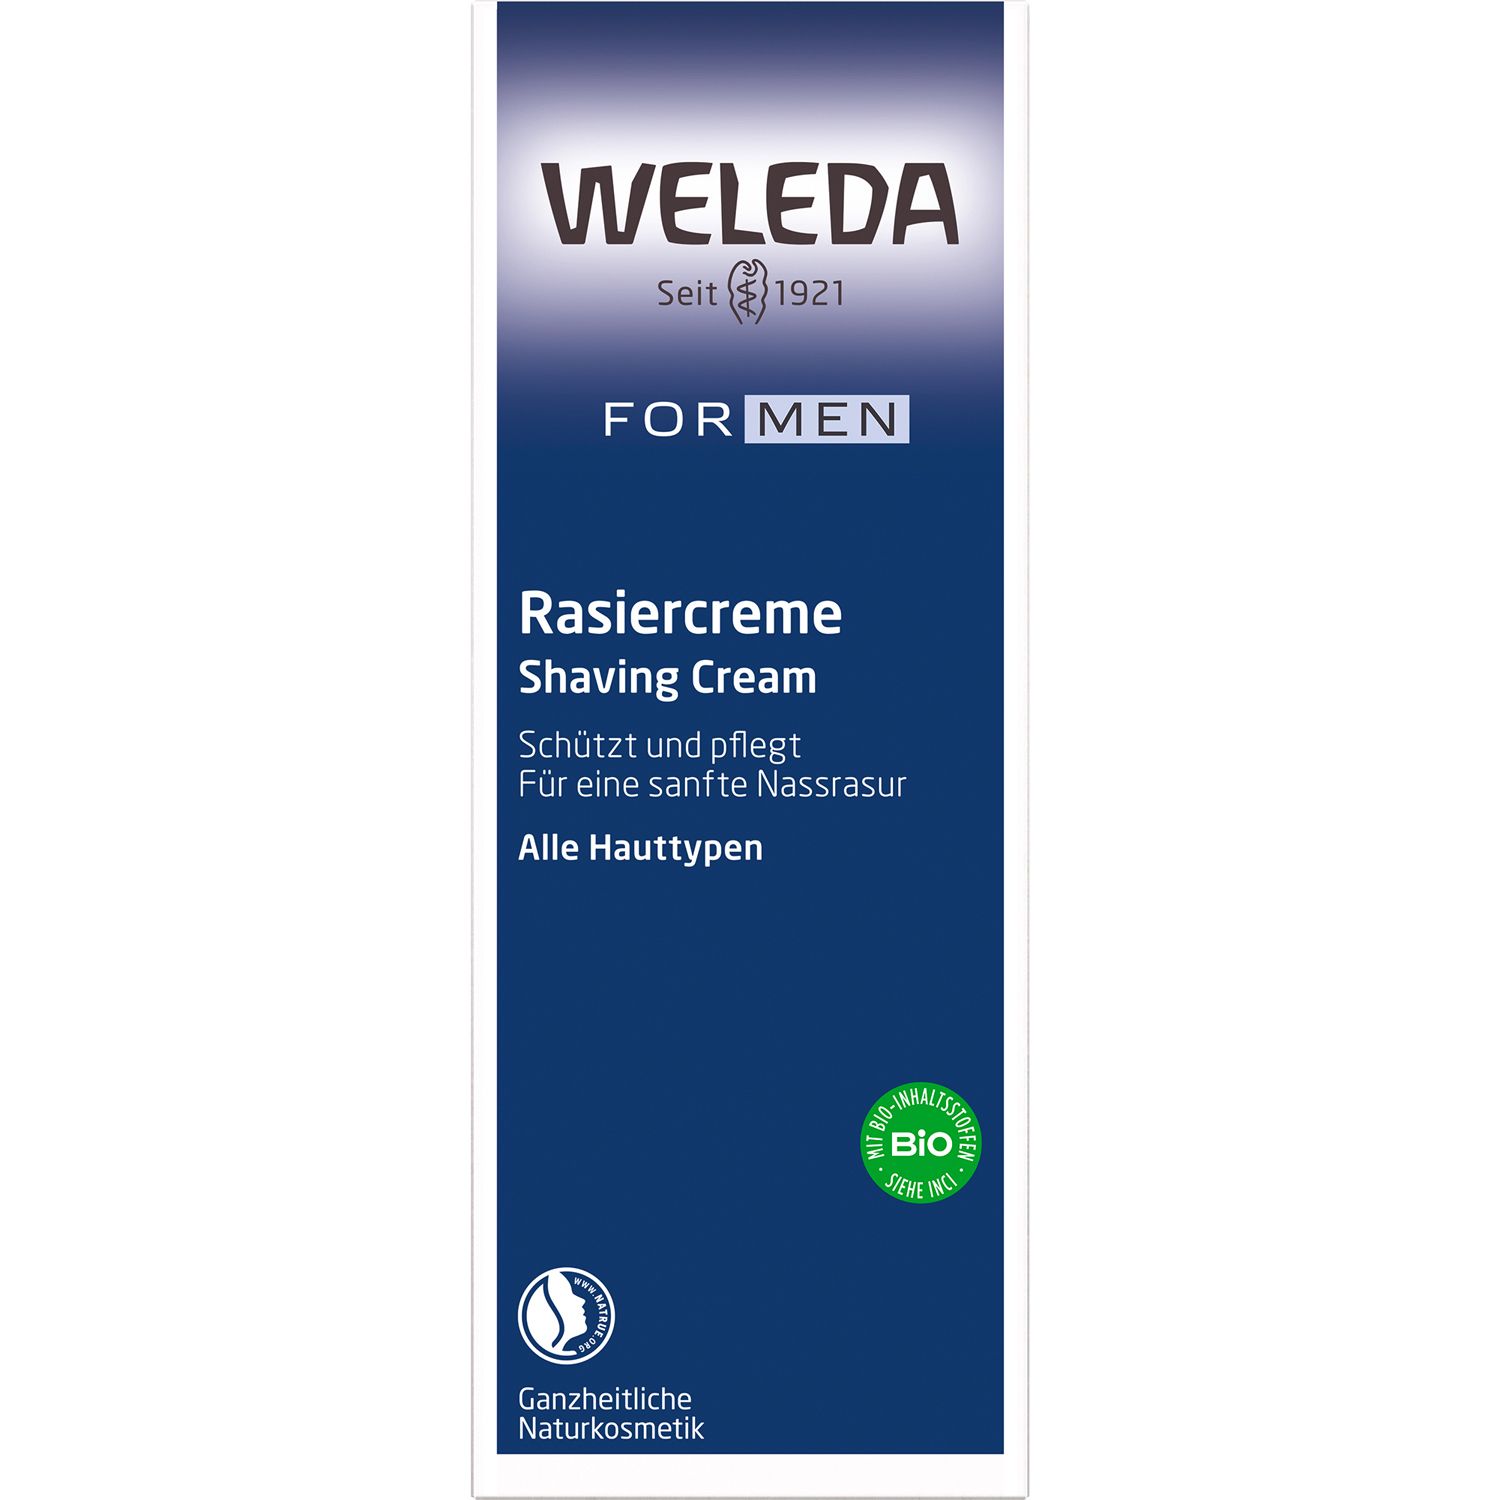 Weleda Rasiercreme  - Sanfter Schaum für eine schonende Nassrasur. Schützt und pflegt die Haut